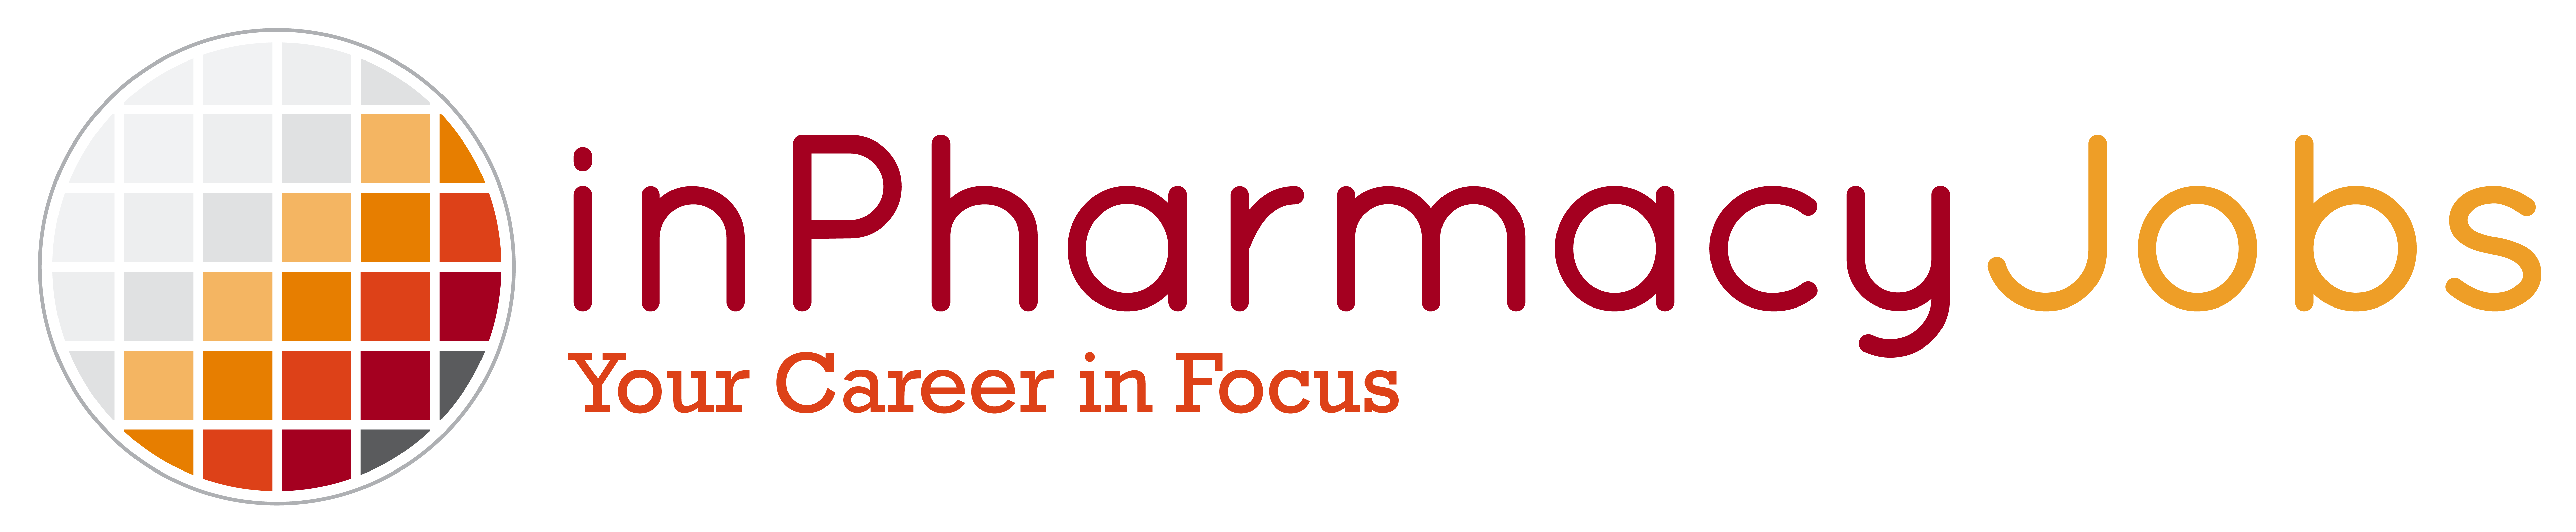 inPharmacy Jobs Logo